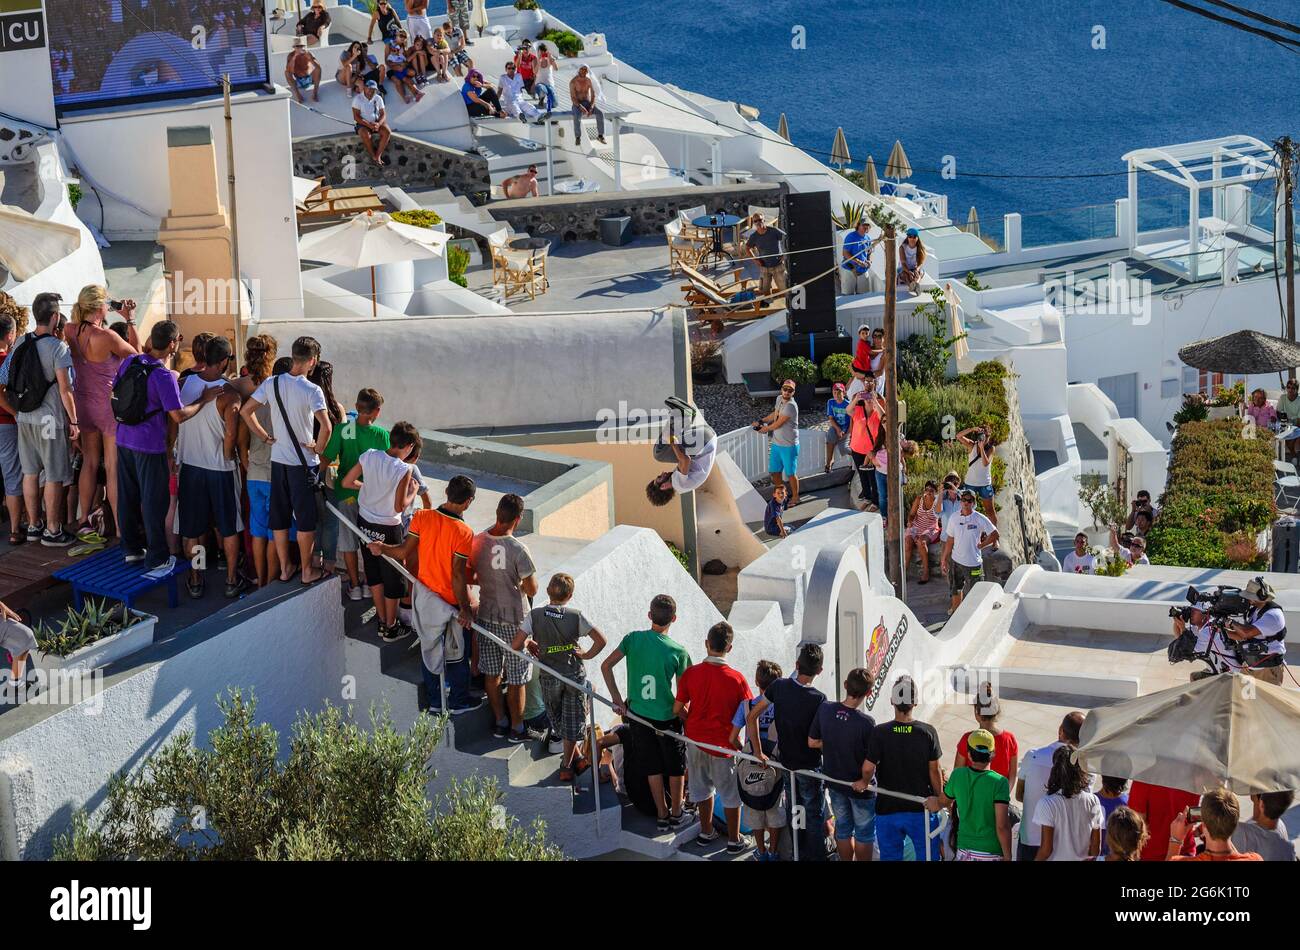 Atleti in azione. I turisti e i visitatori aspettano di vedere uno spettacolo di parchi unico dagli atleti di tutto il mondo nell'isola di Santorini, in Grecia Foto Stock